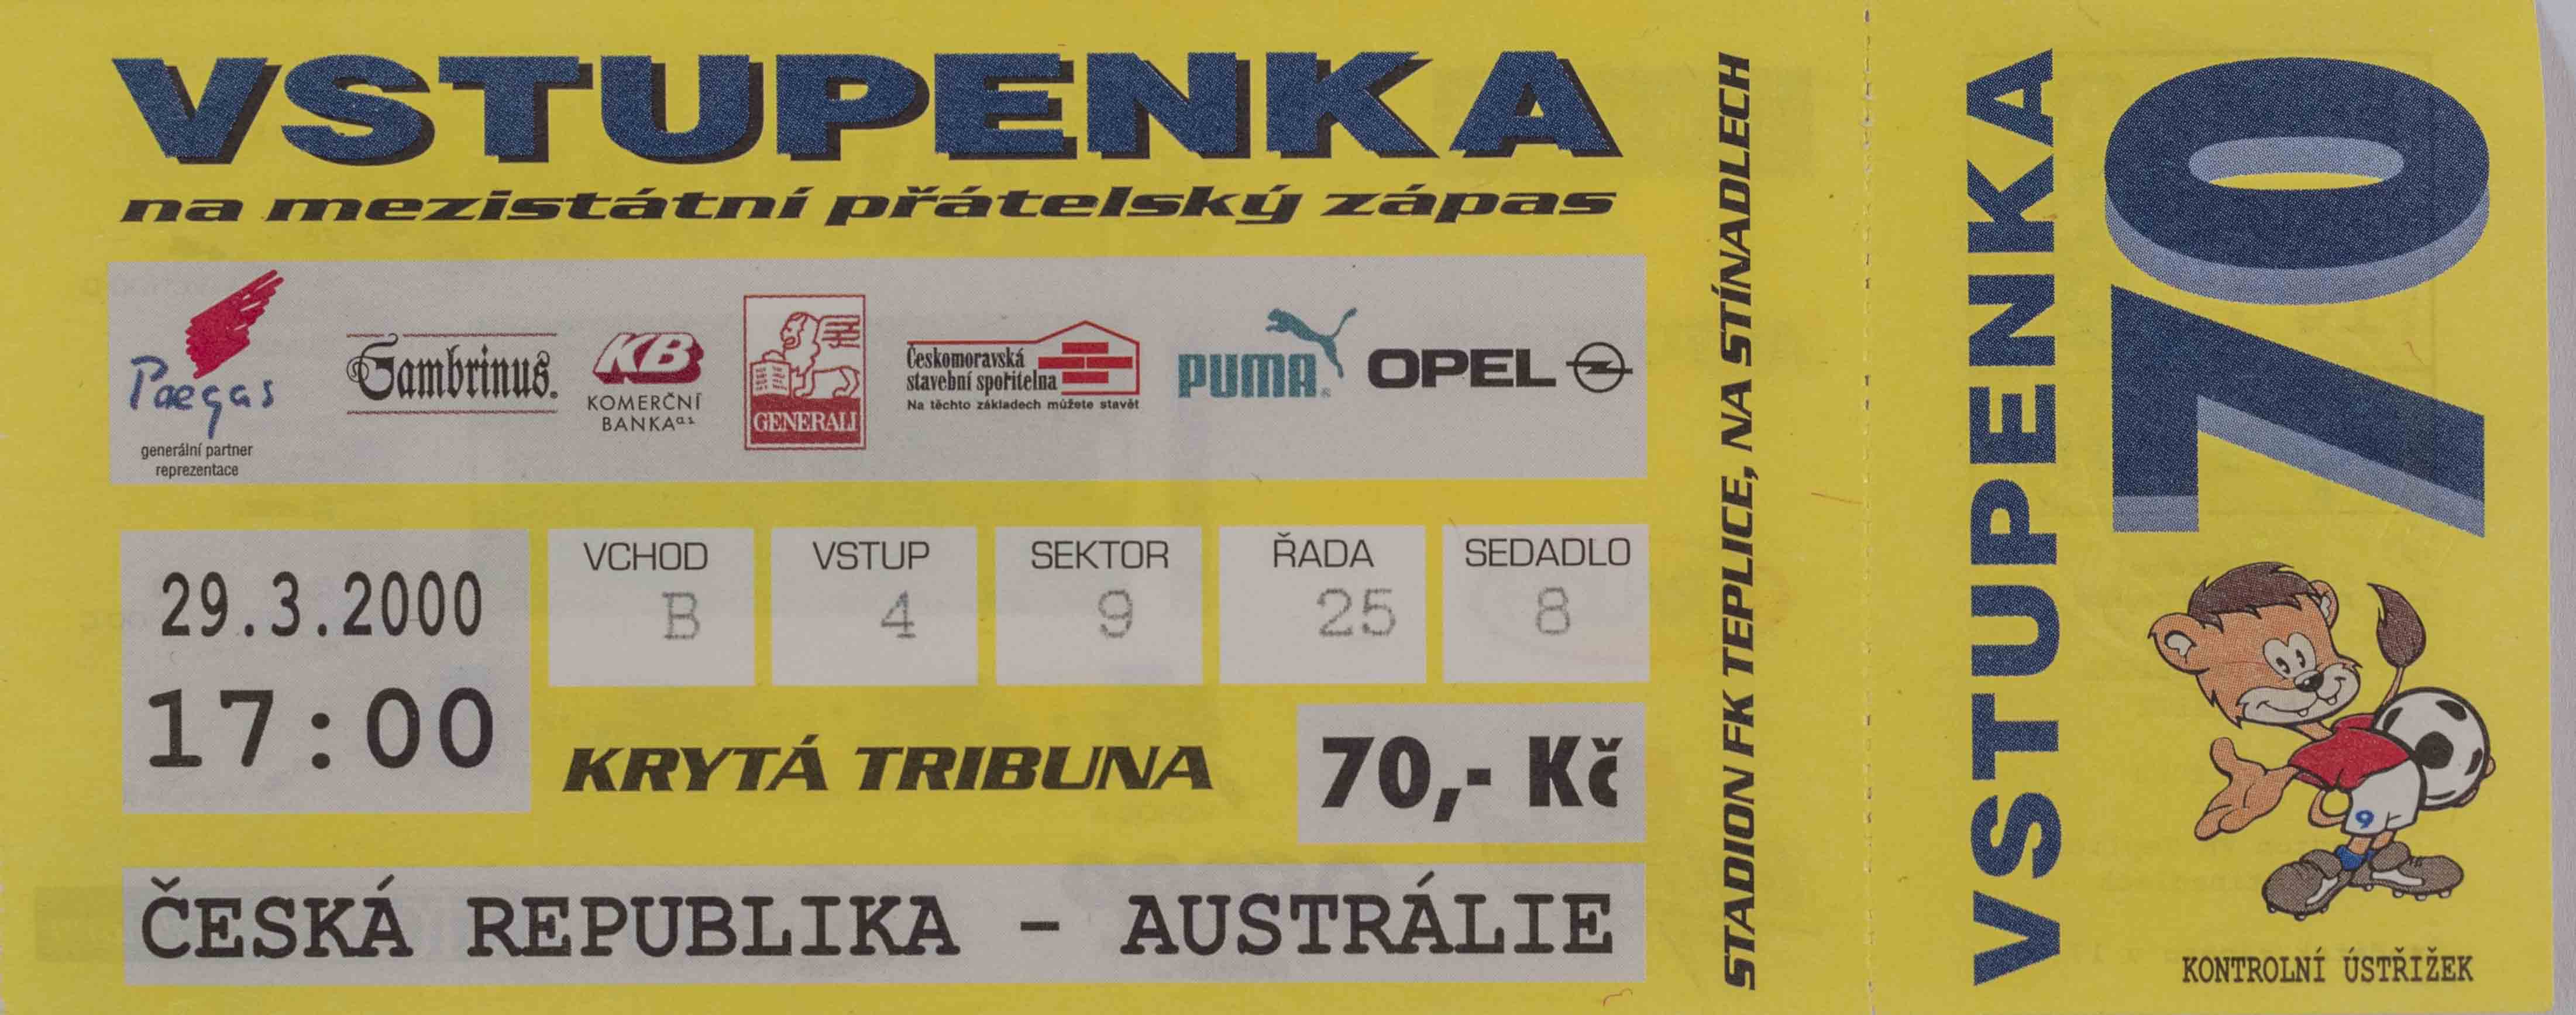 Vstupenka fotbal, ČR v. Austrálie, 2000